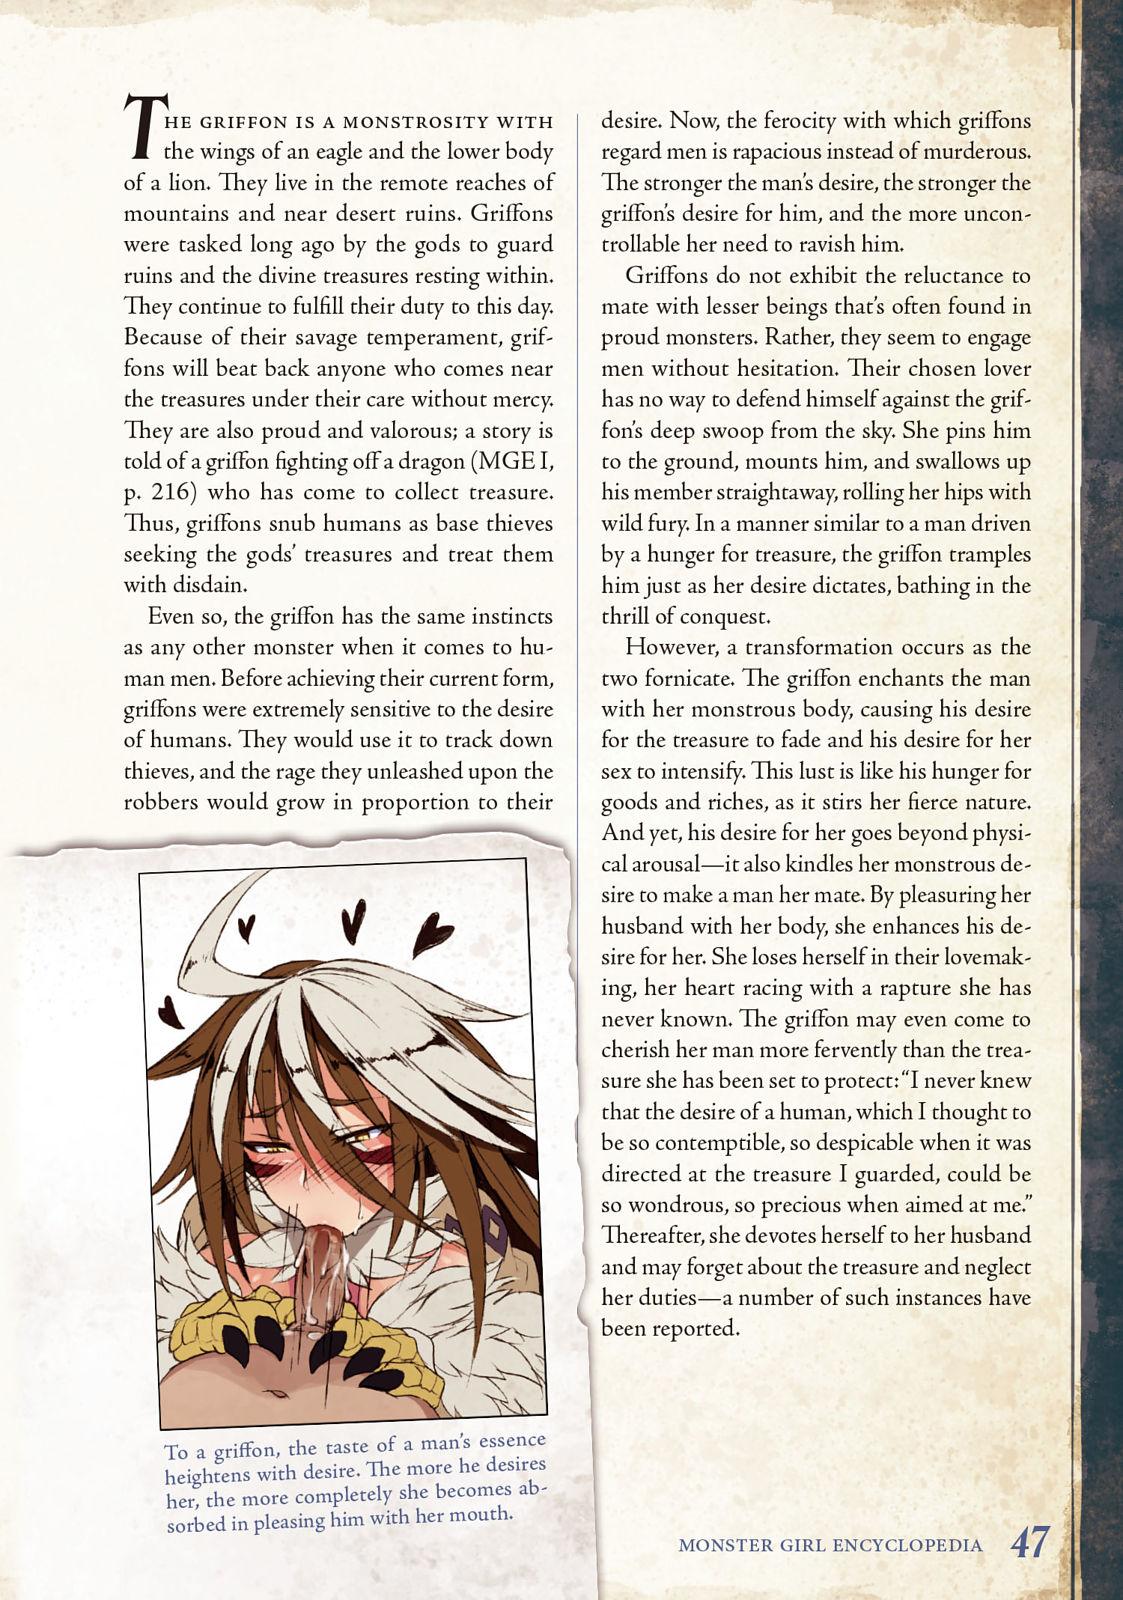 Monster Girl Encyclopedia Vol. 2 47